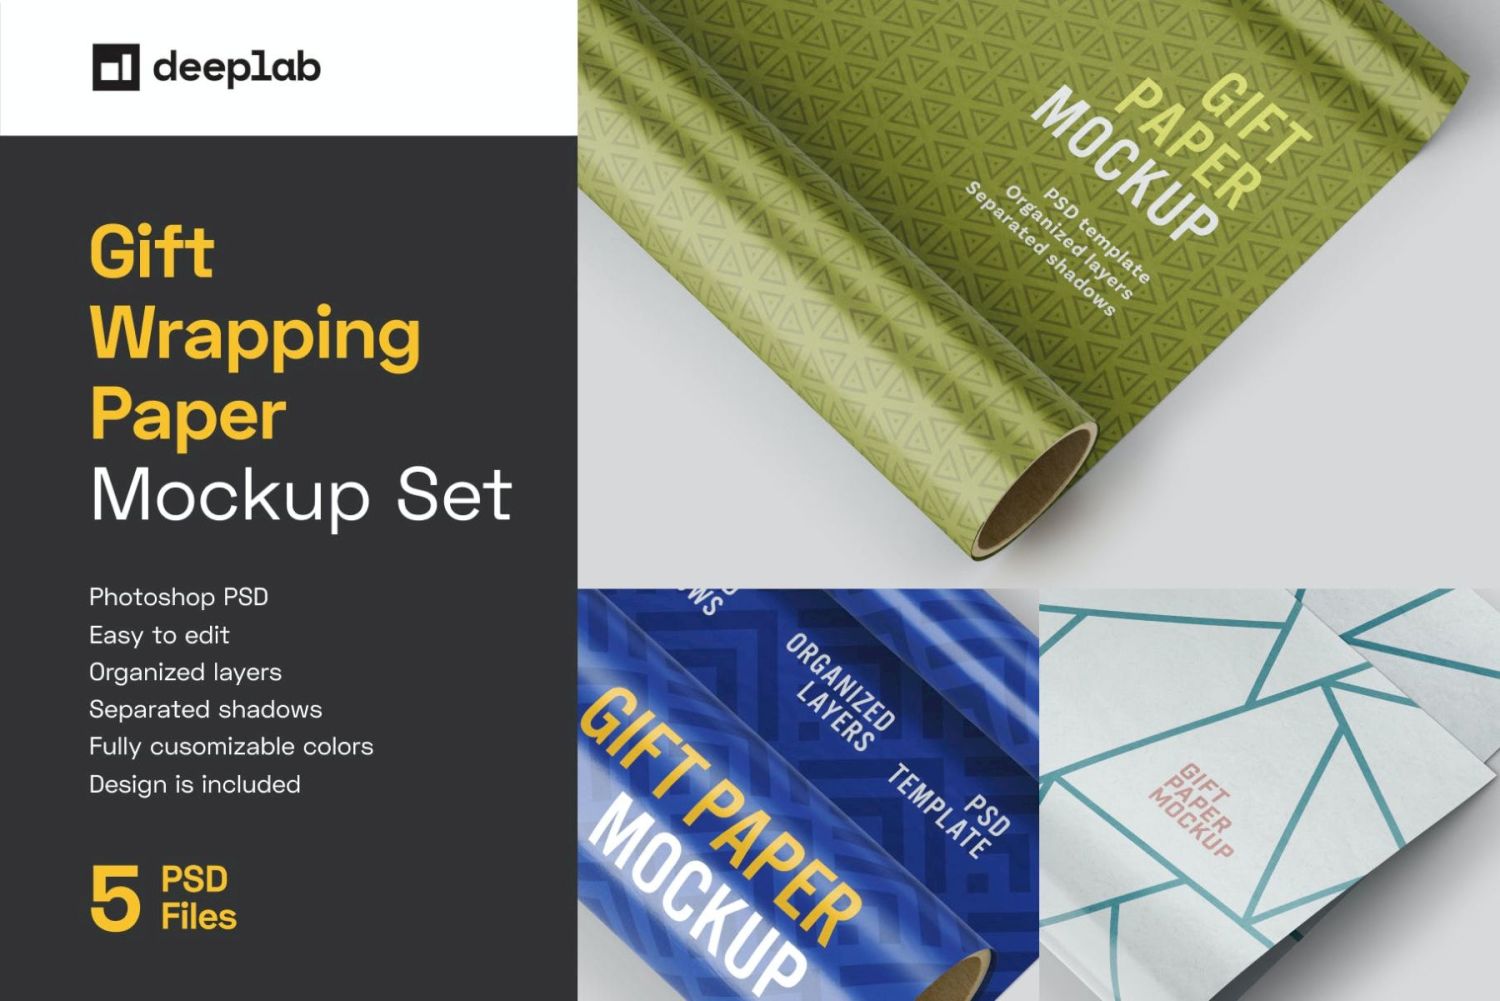 礼品包装纸样机套装 Gift Wrapping Paper Mockup Set插图